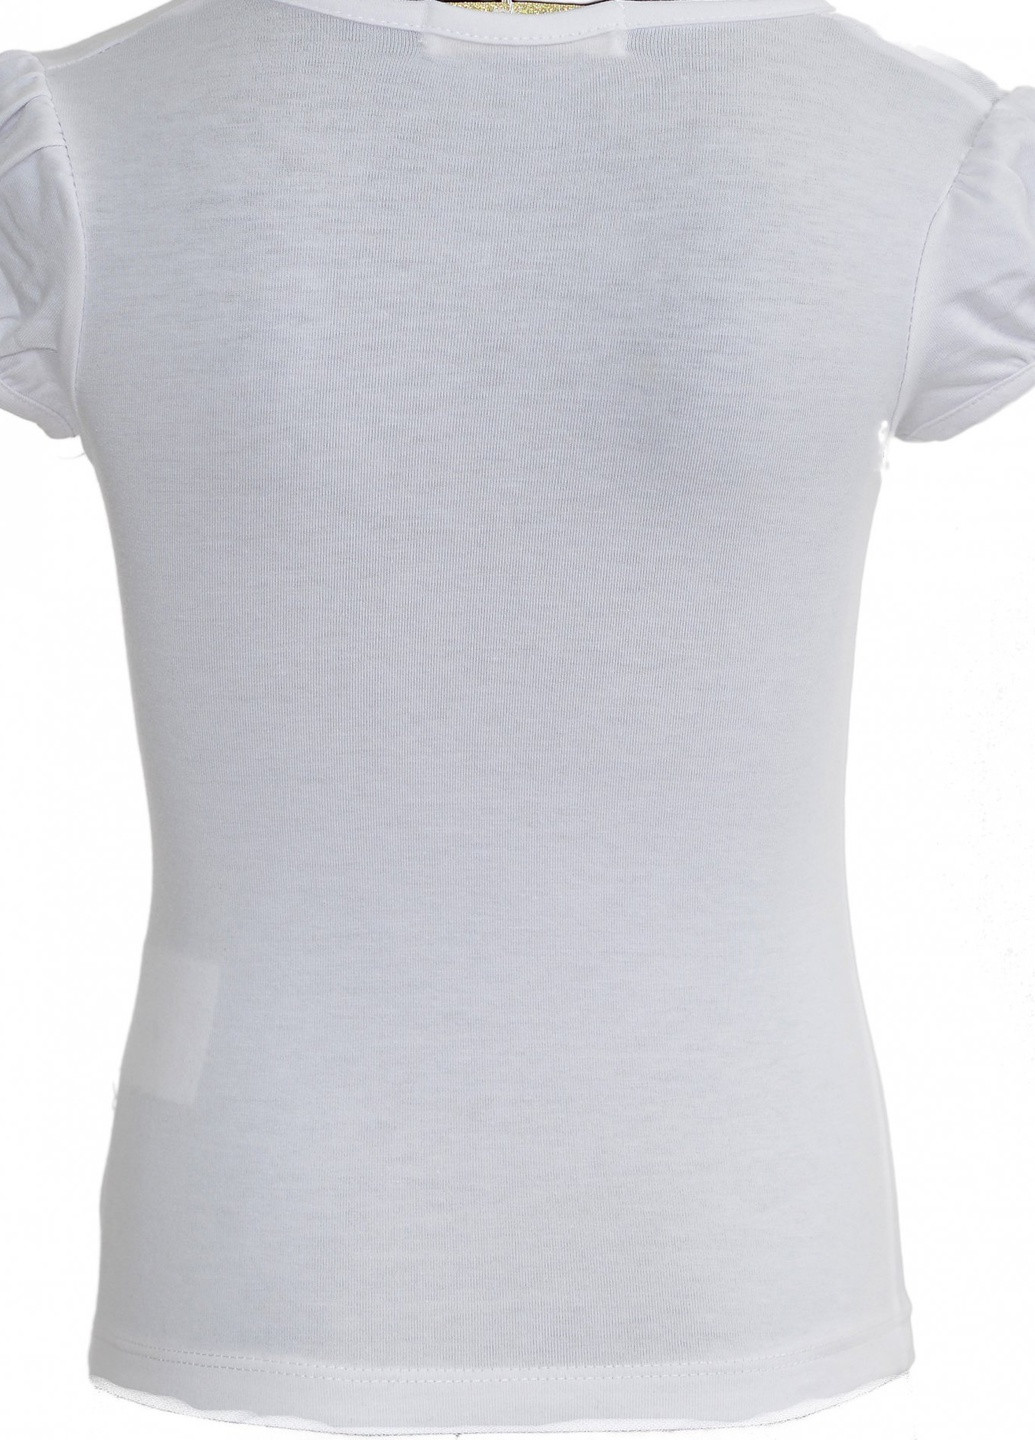 Белая футболки футболка на дівчаток (104)11881-736 Lemanta